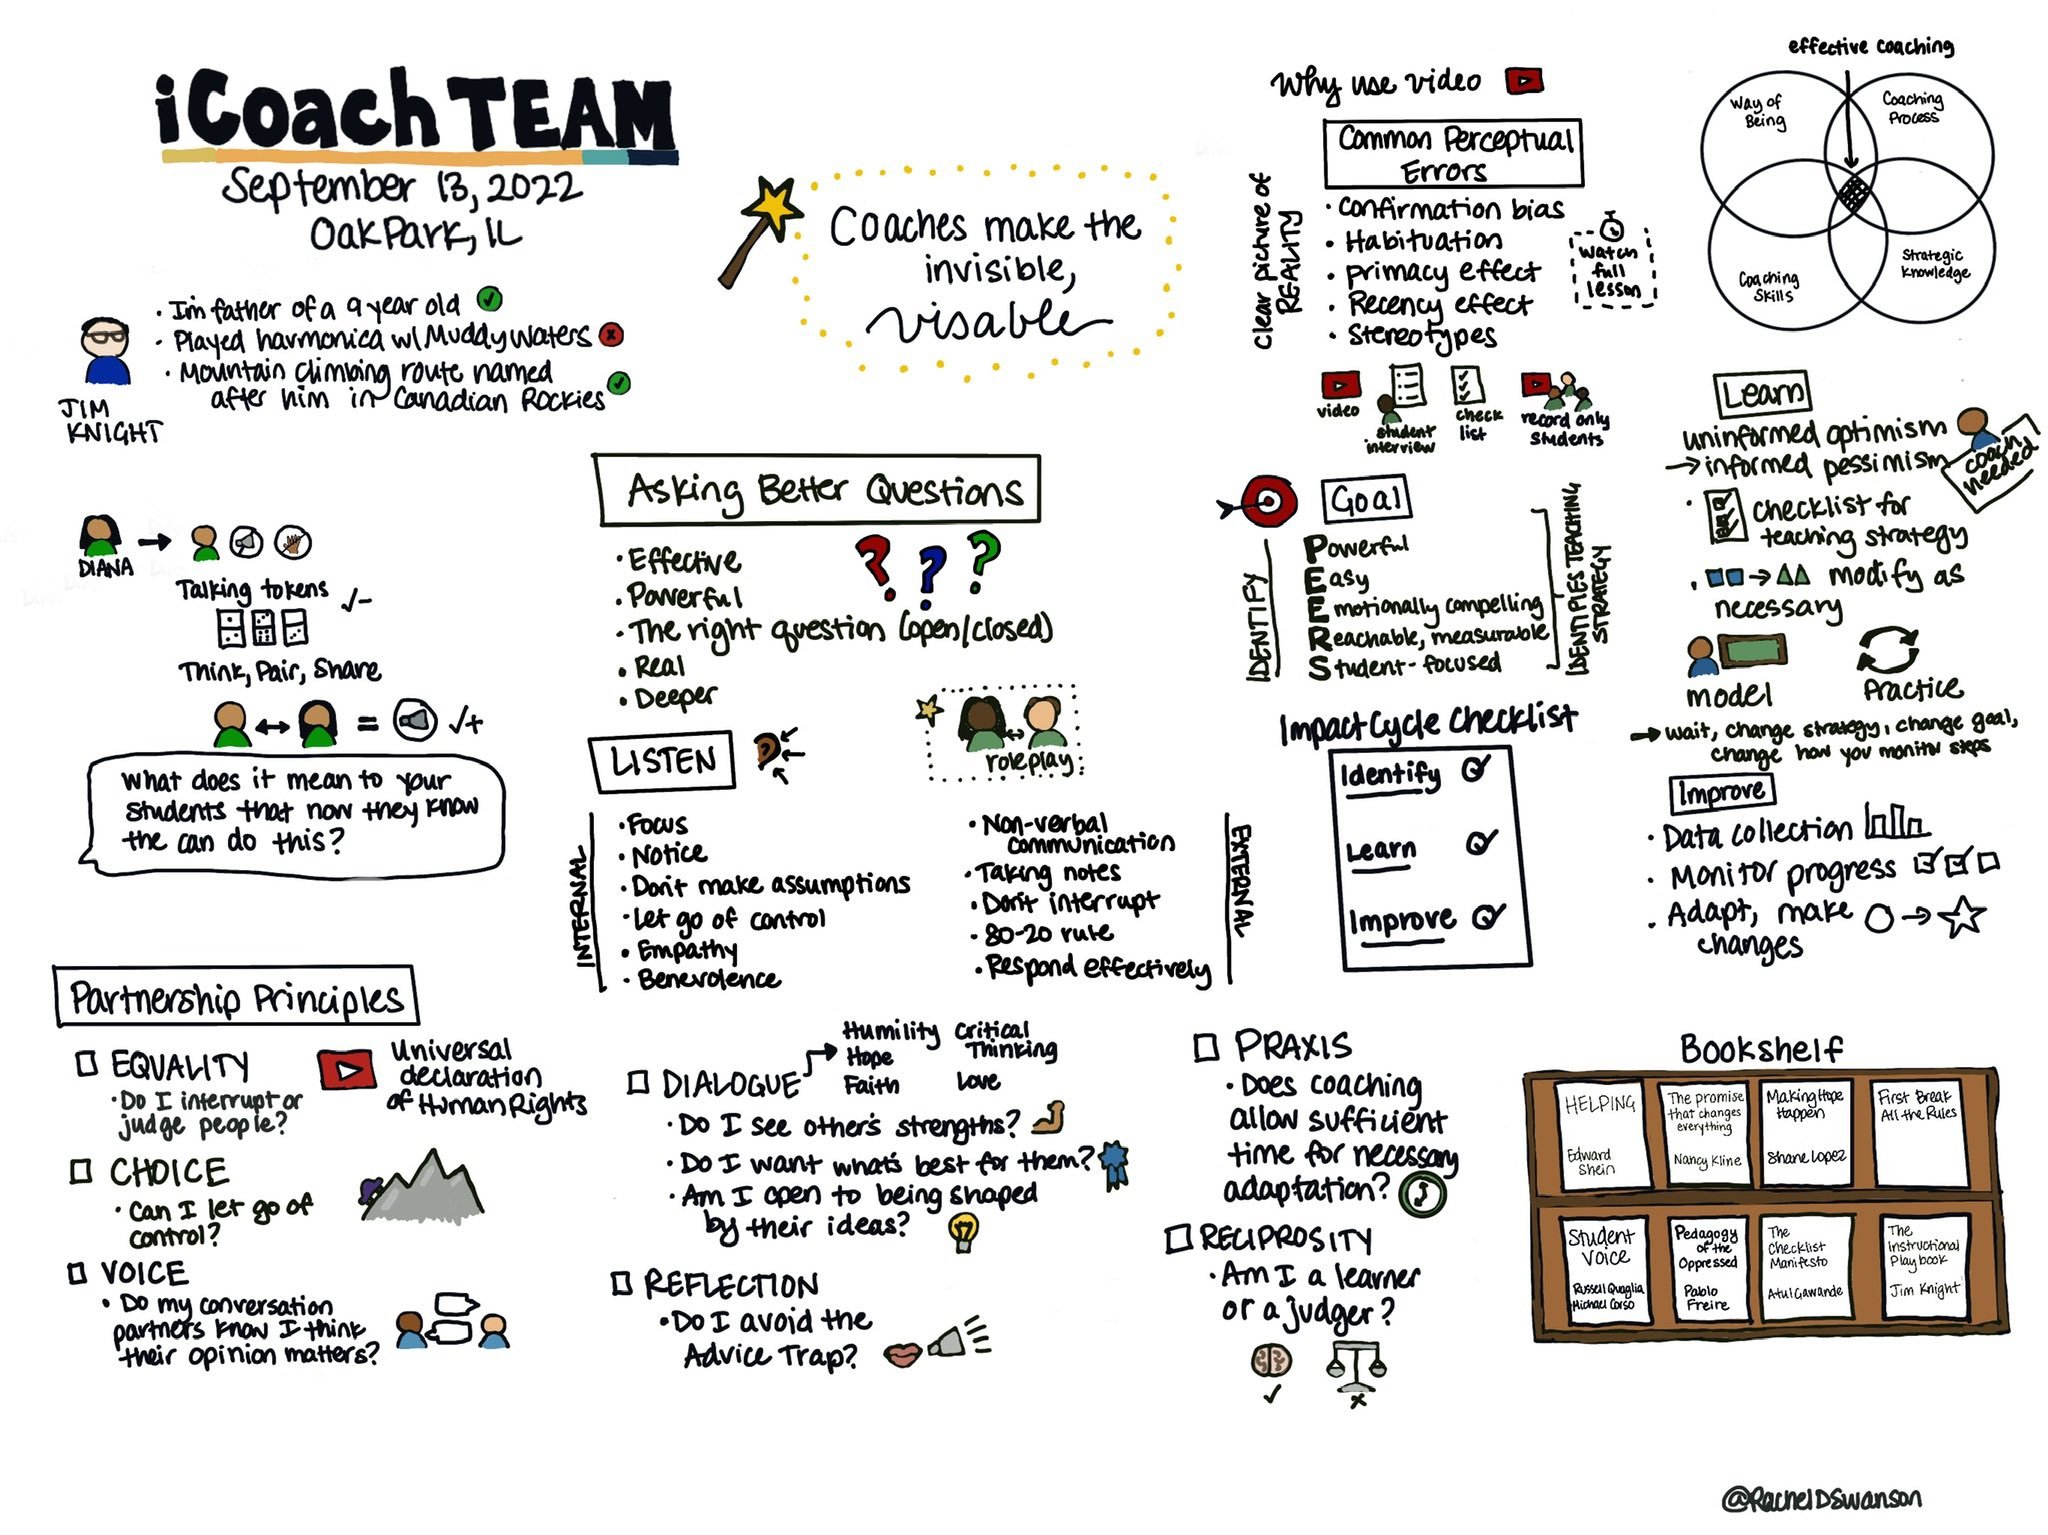 iCoach Team 1.jpg